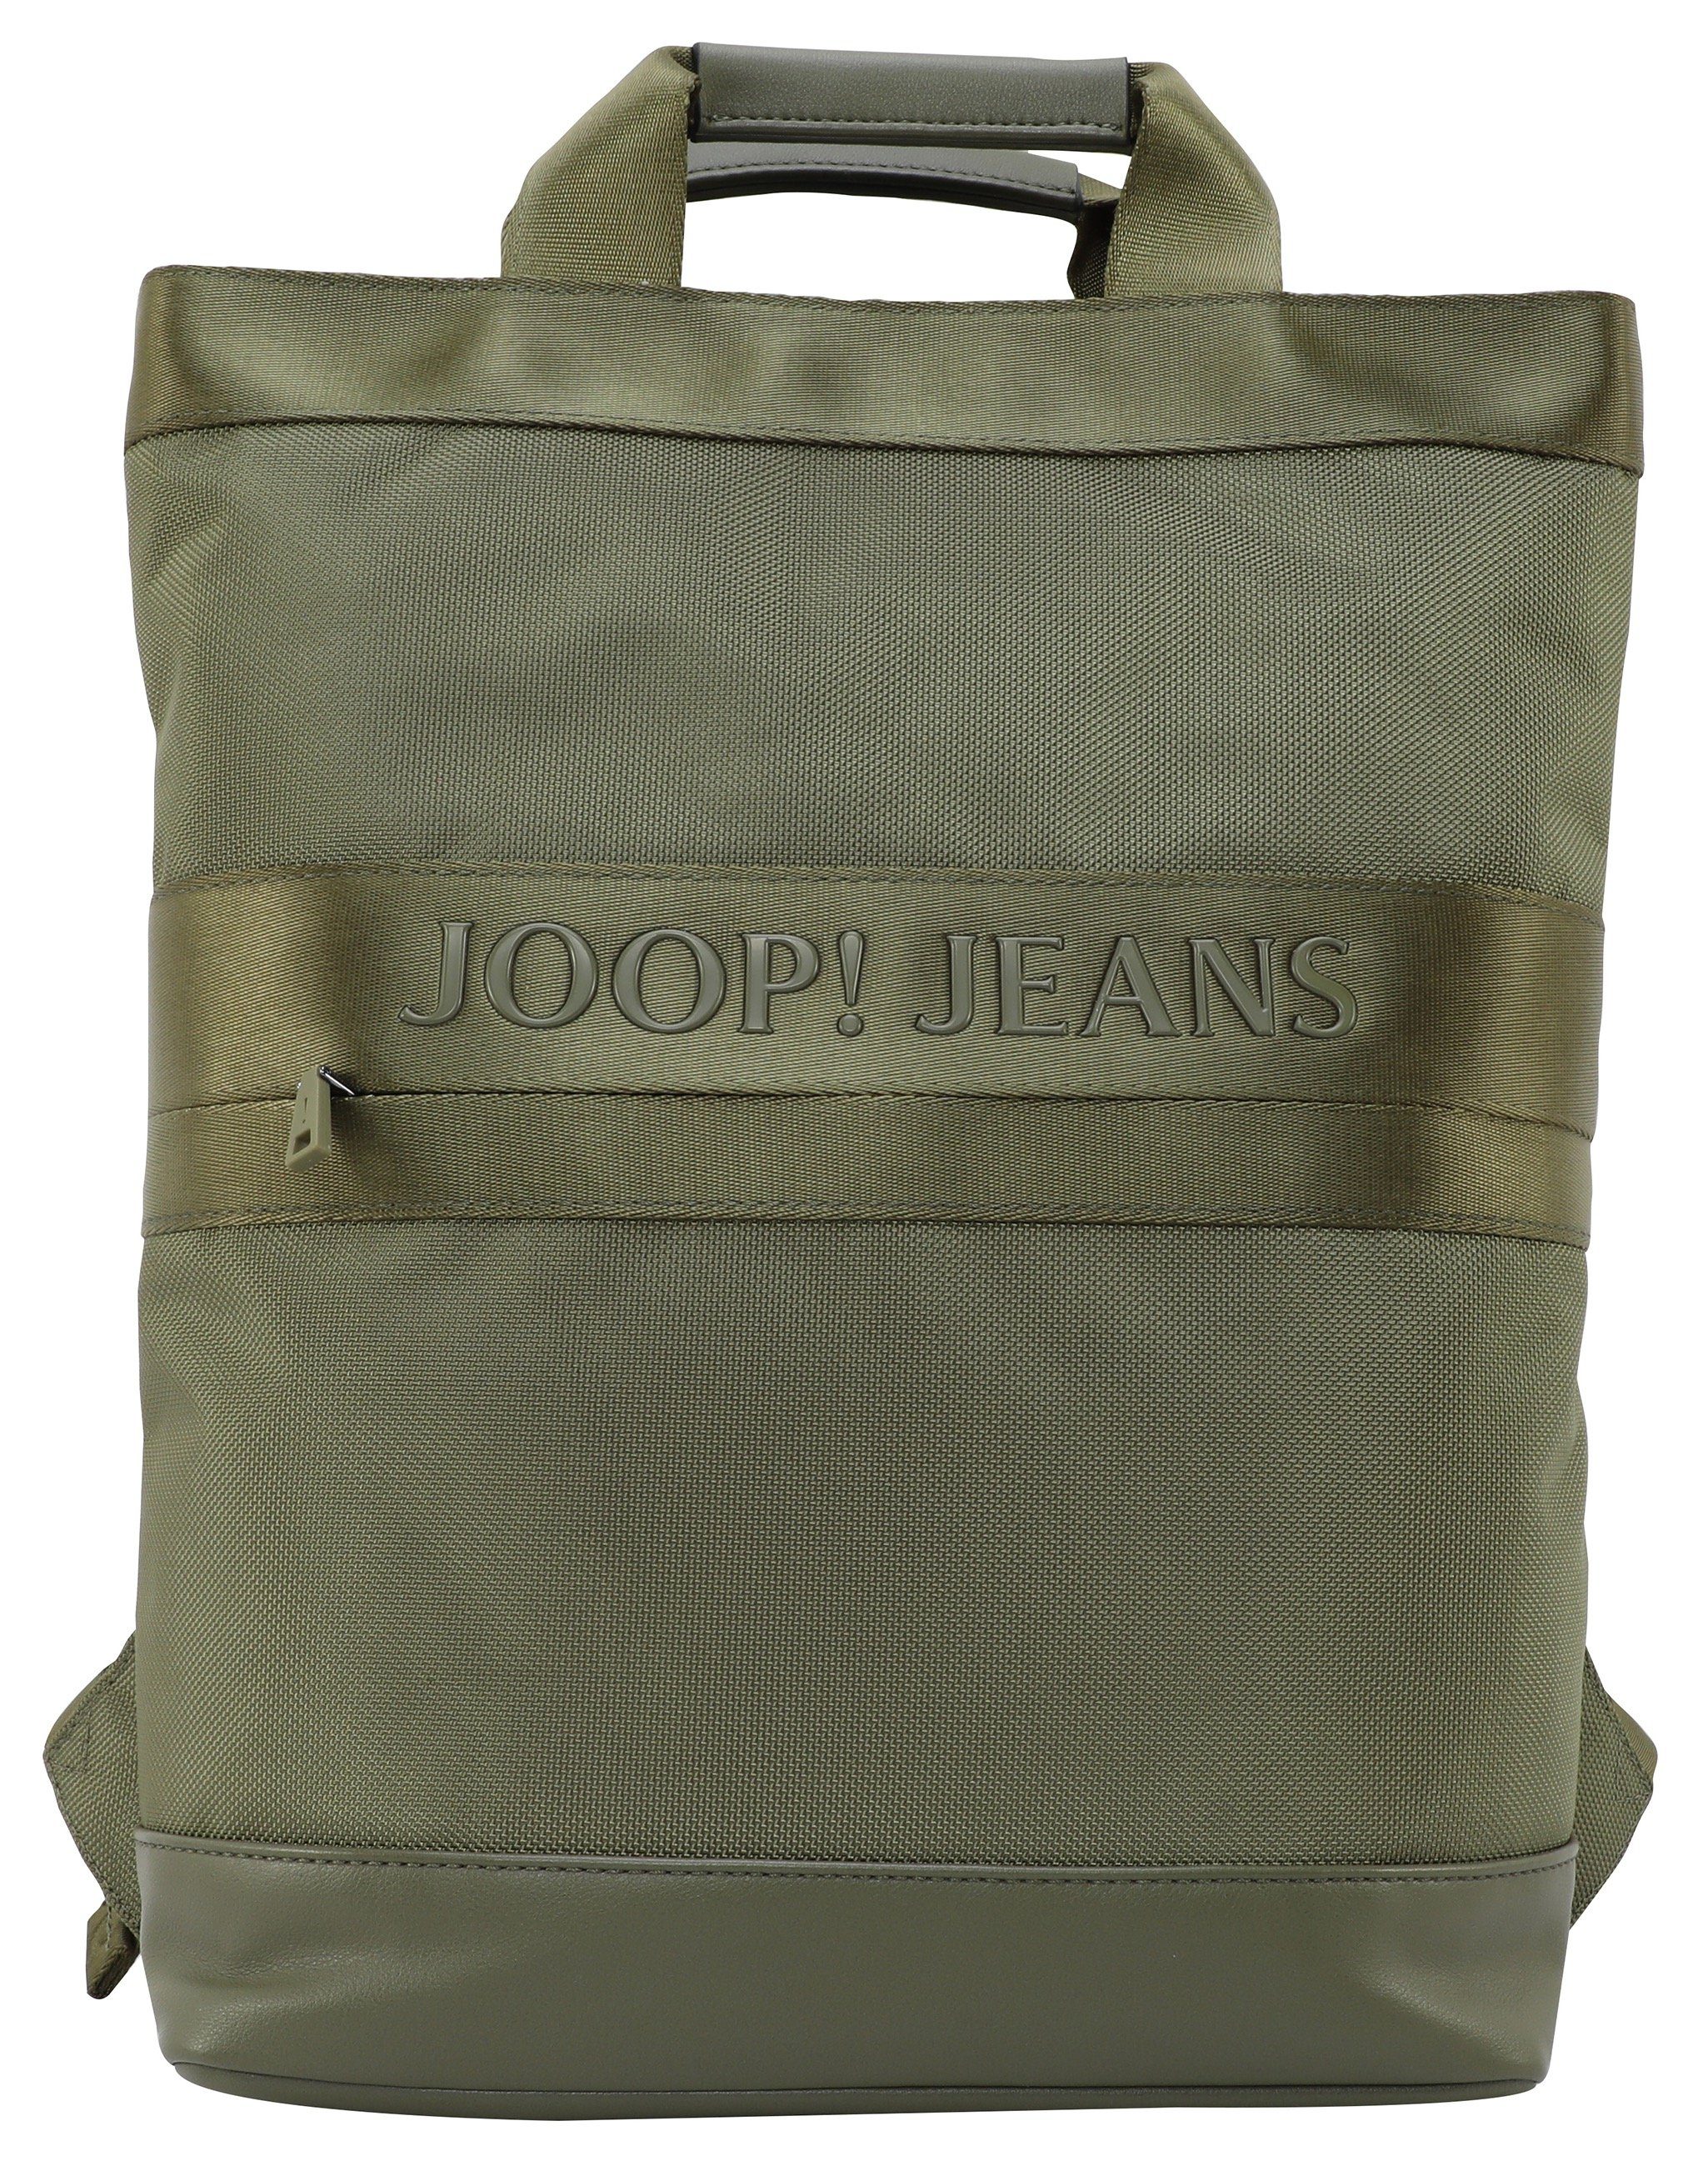 modica mit svz, backpack Schultertragegurt Jeans Reißverschluss-Vortasche, Verstellbarer Cityrucksack falk Joop